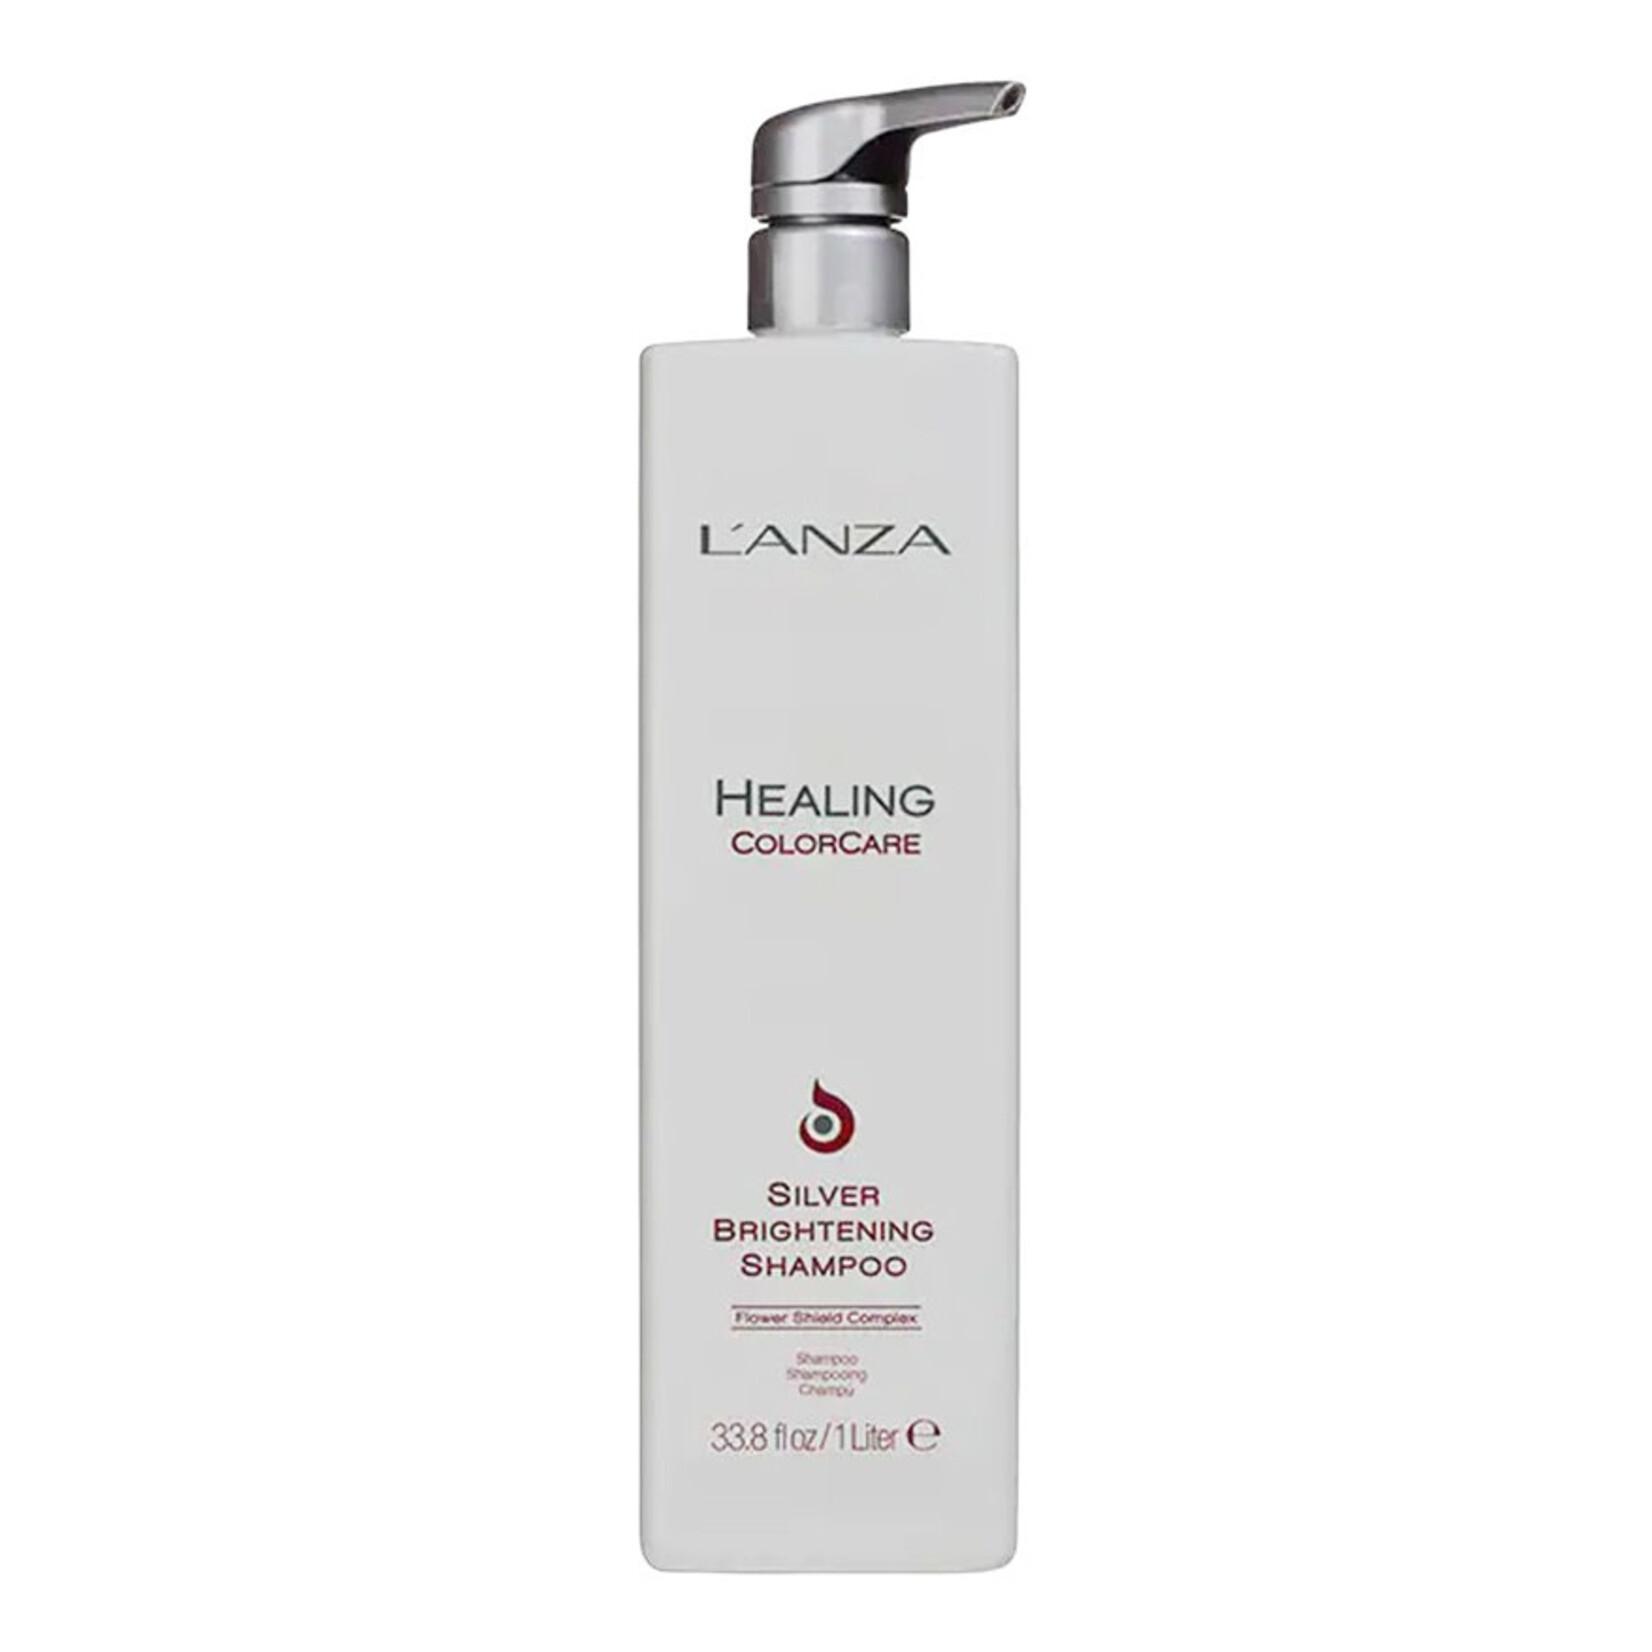 L'Anza L'anza - Healing colorcare - Shampooing silver 1L